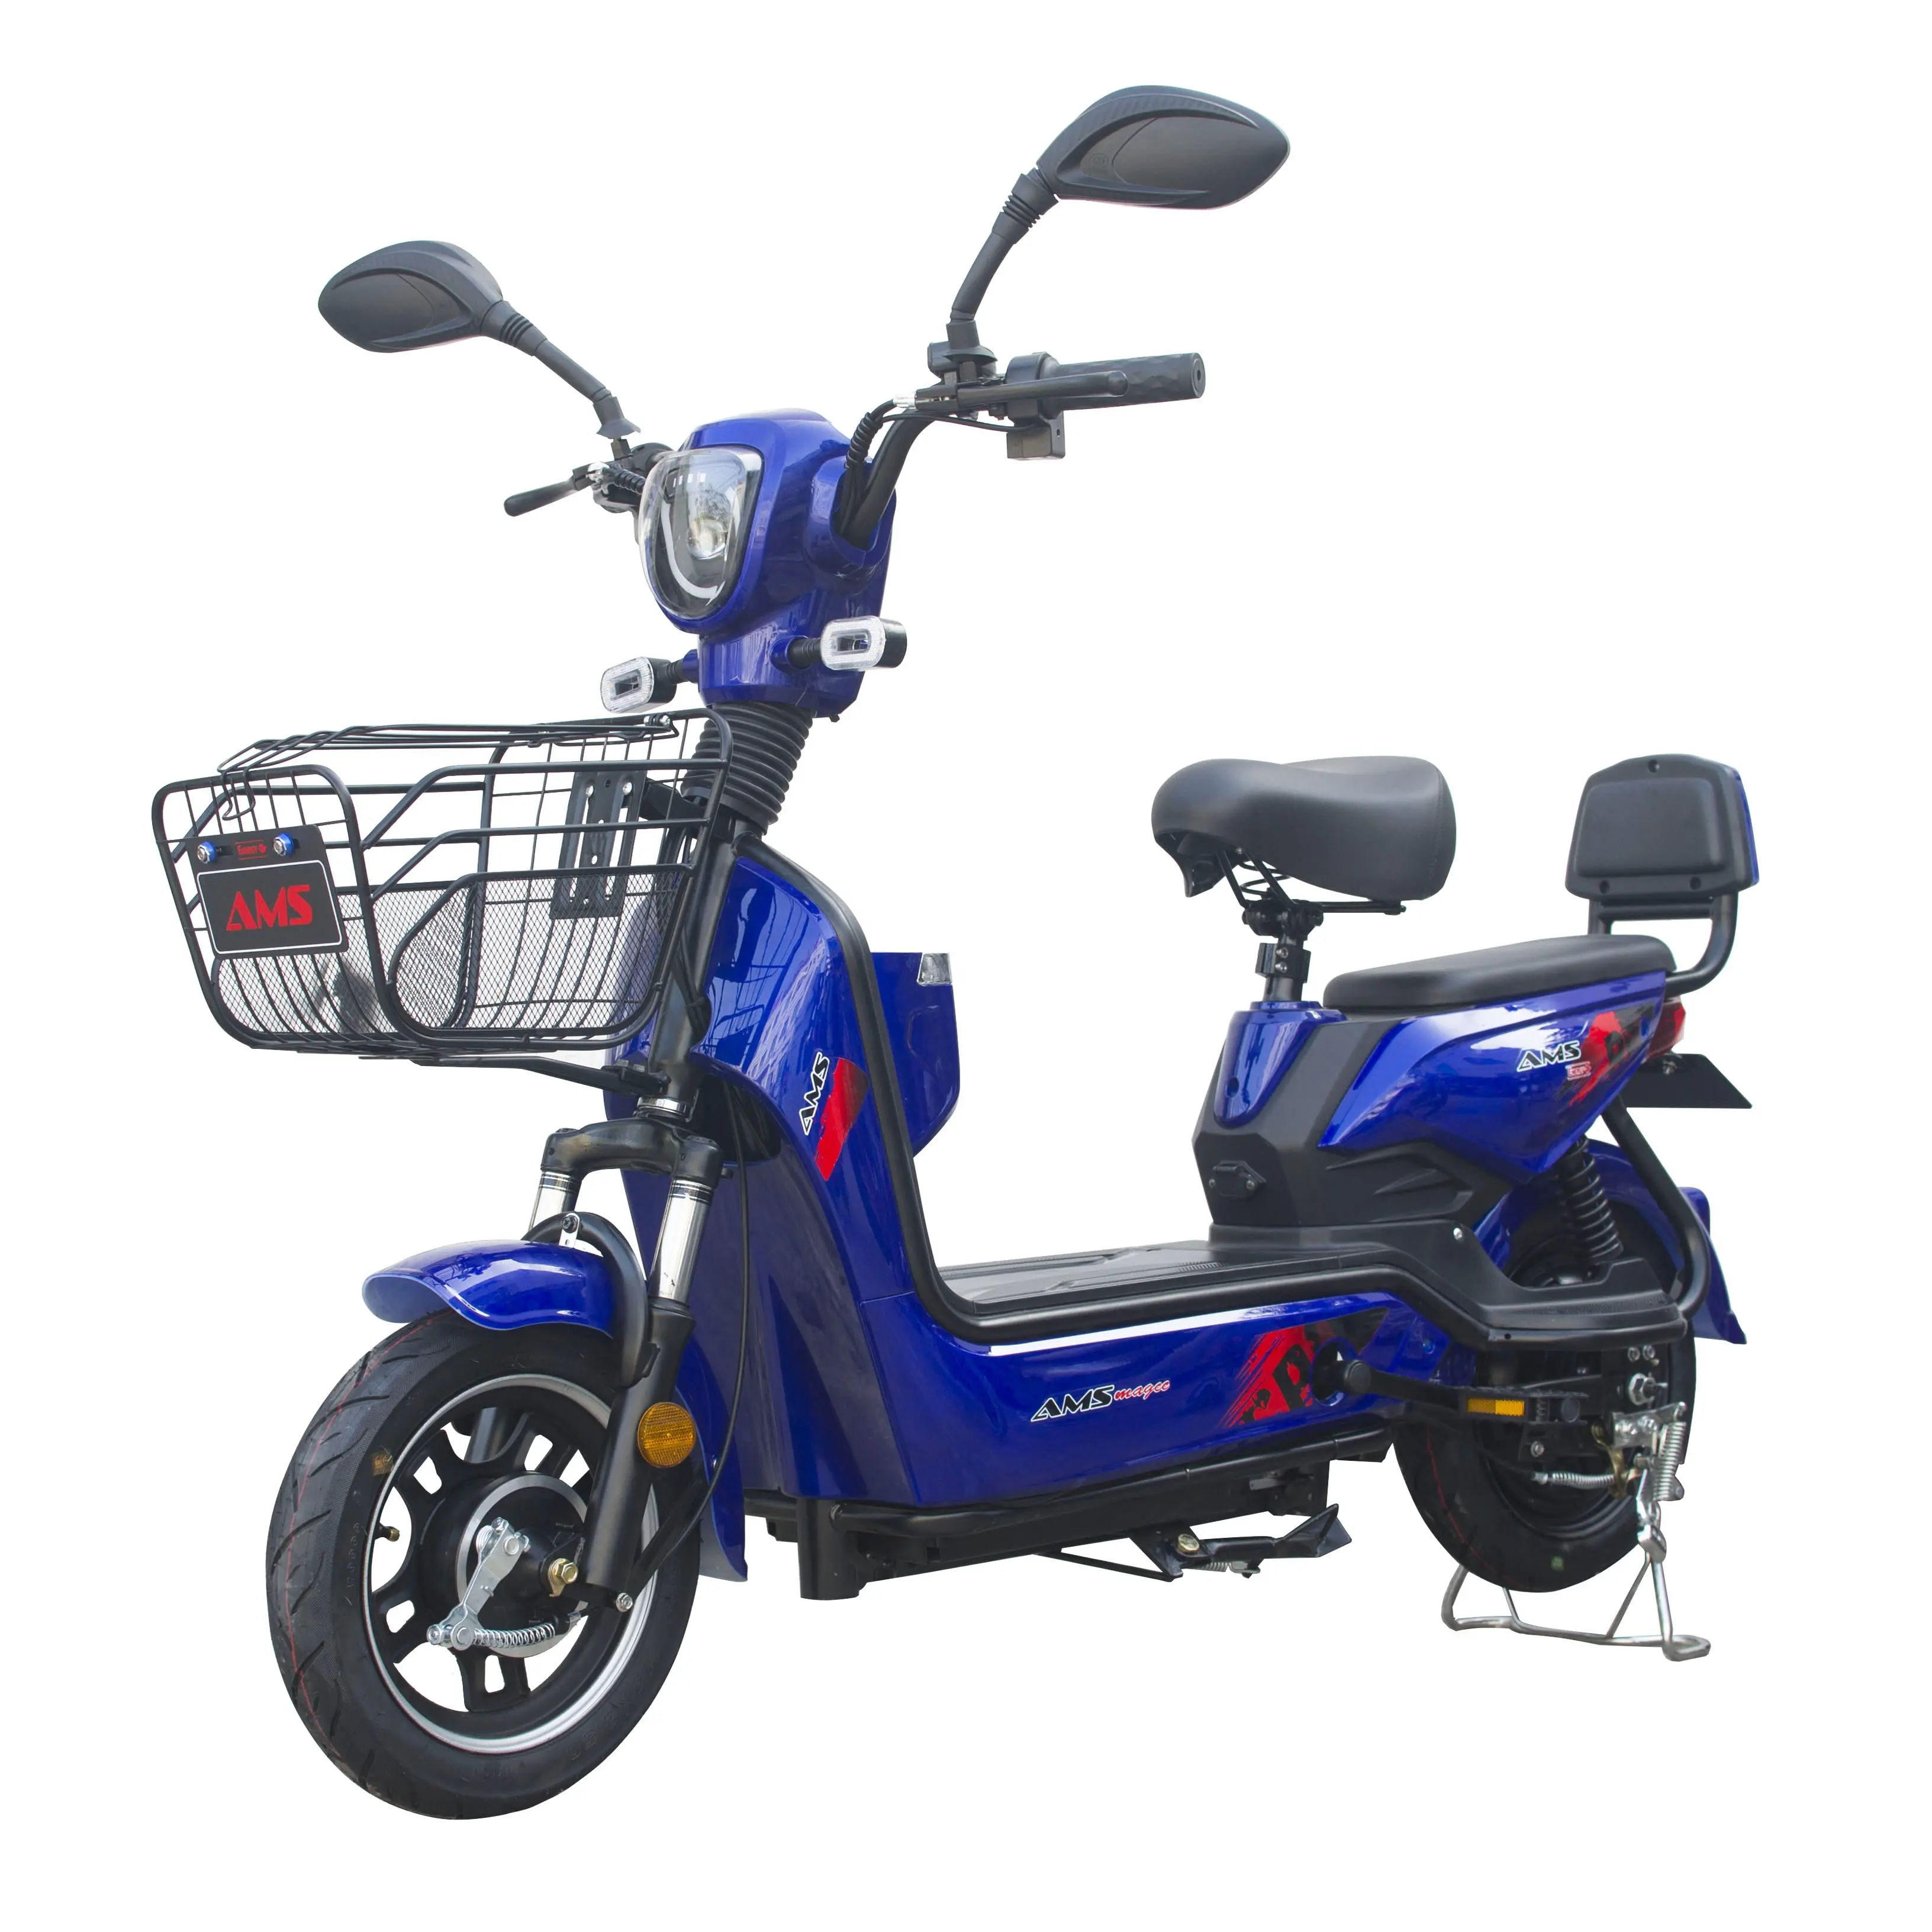 Scooter chinesa barata para venda bicicletas elétricas de assento duplo bicicleta elétrica mais barata bicicleta elétrica pequena e bicicleta elétrica 500w ebike 14 polegadas